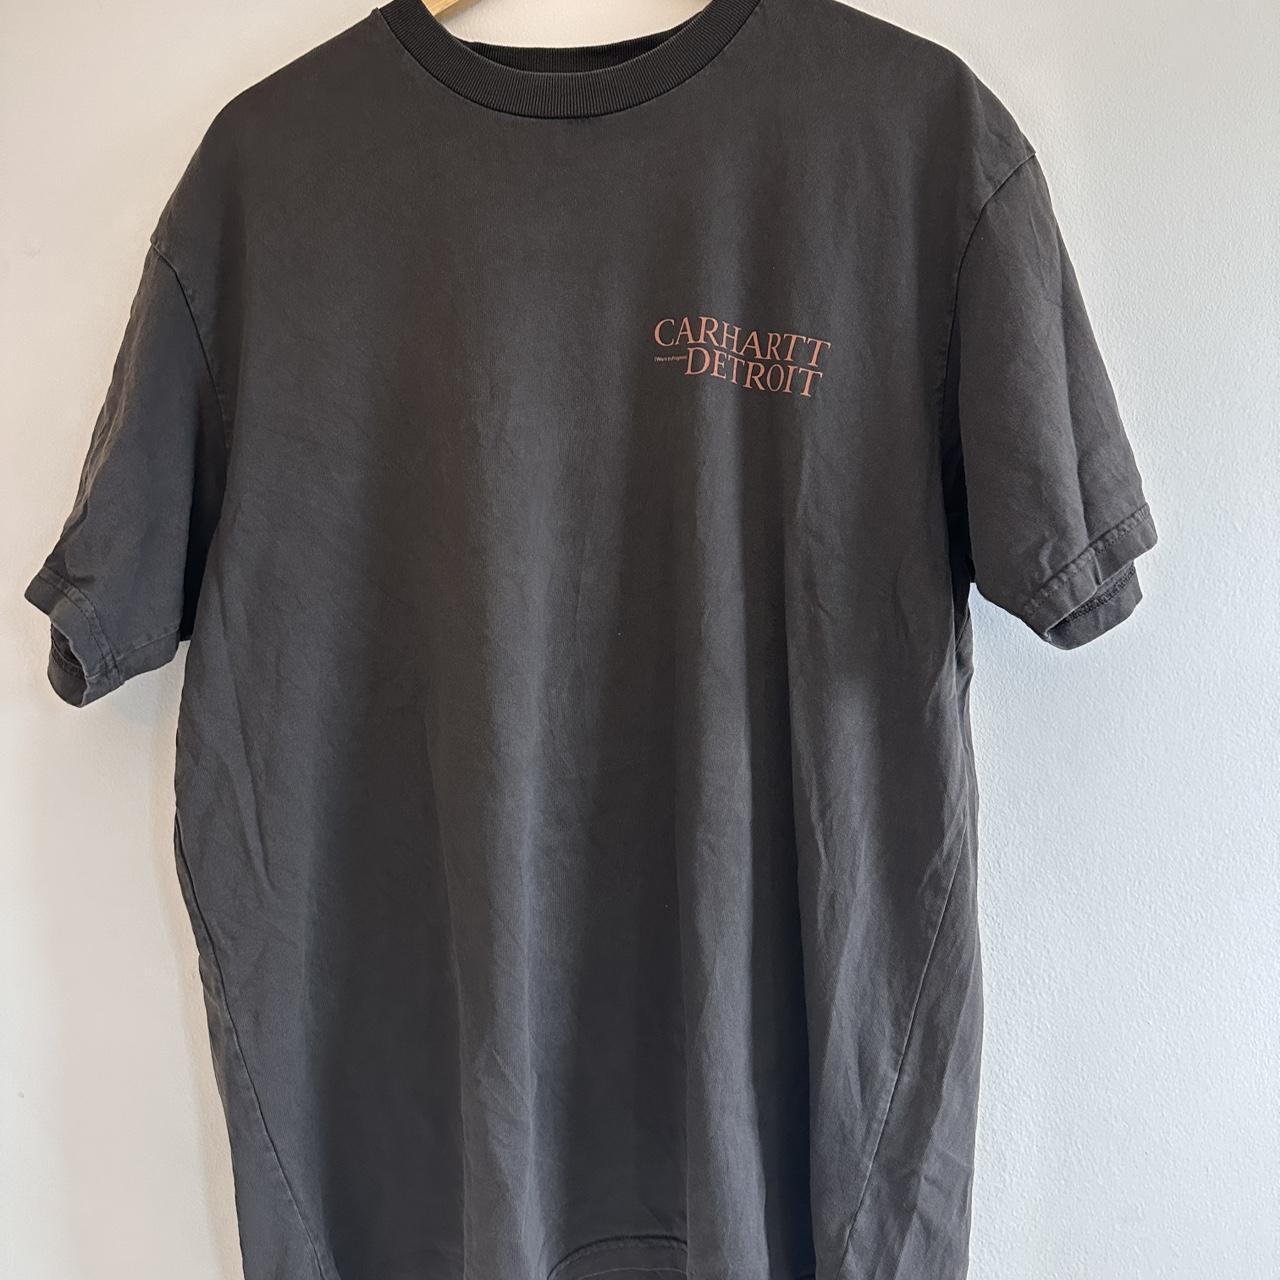 Carhartt WIP undisputed t-shirt in brown - Depop